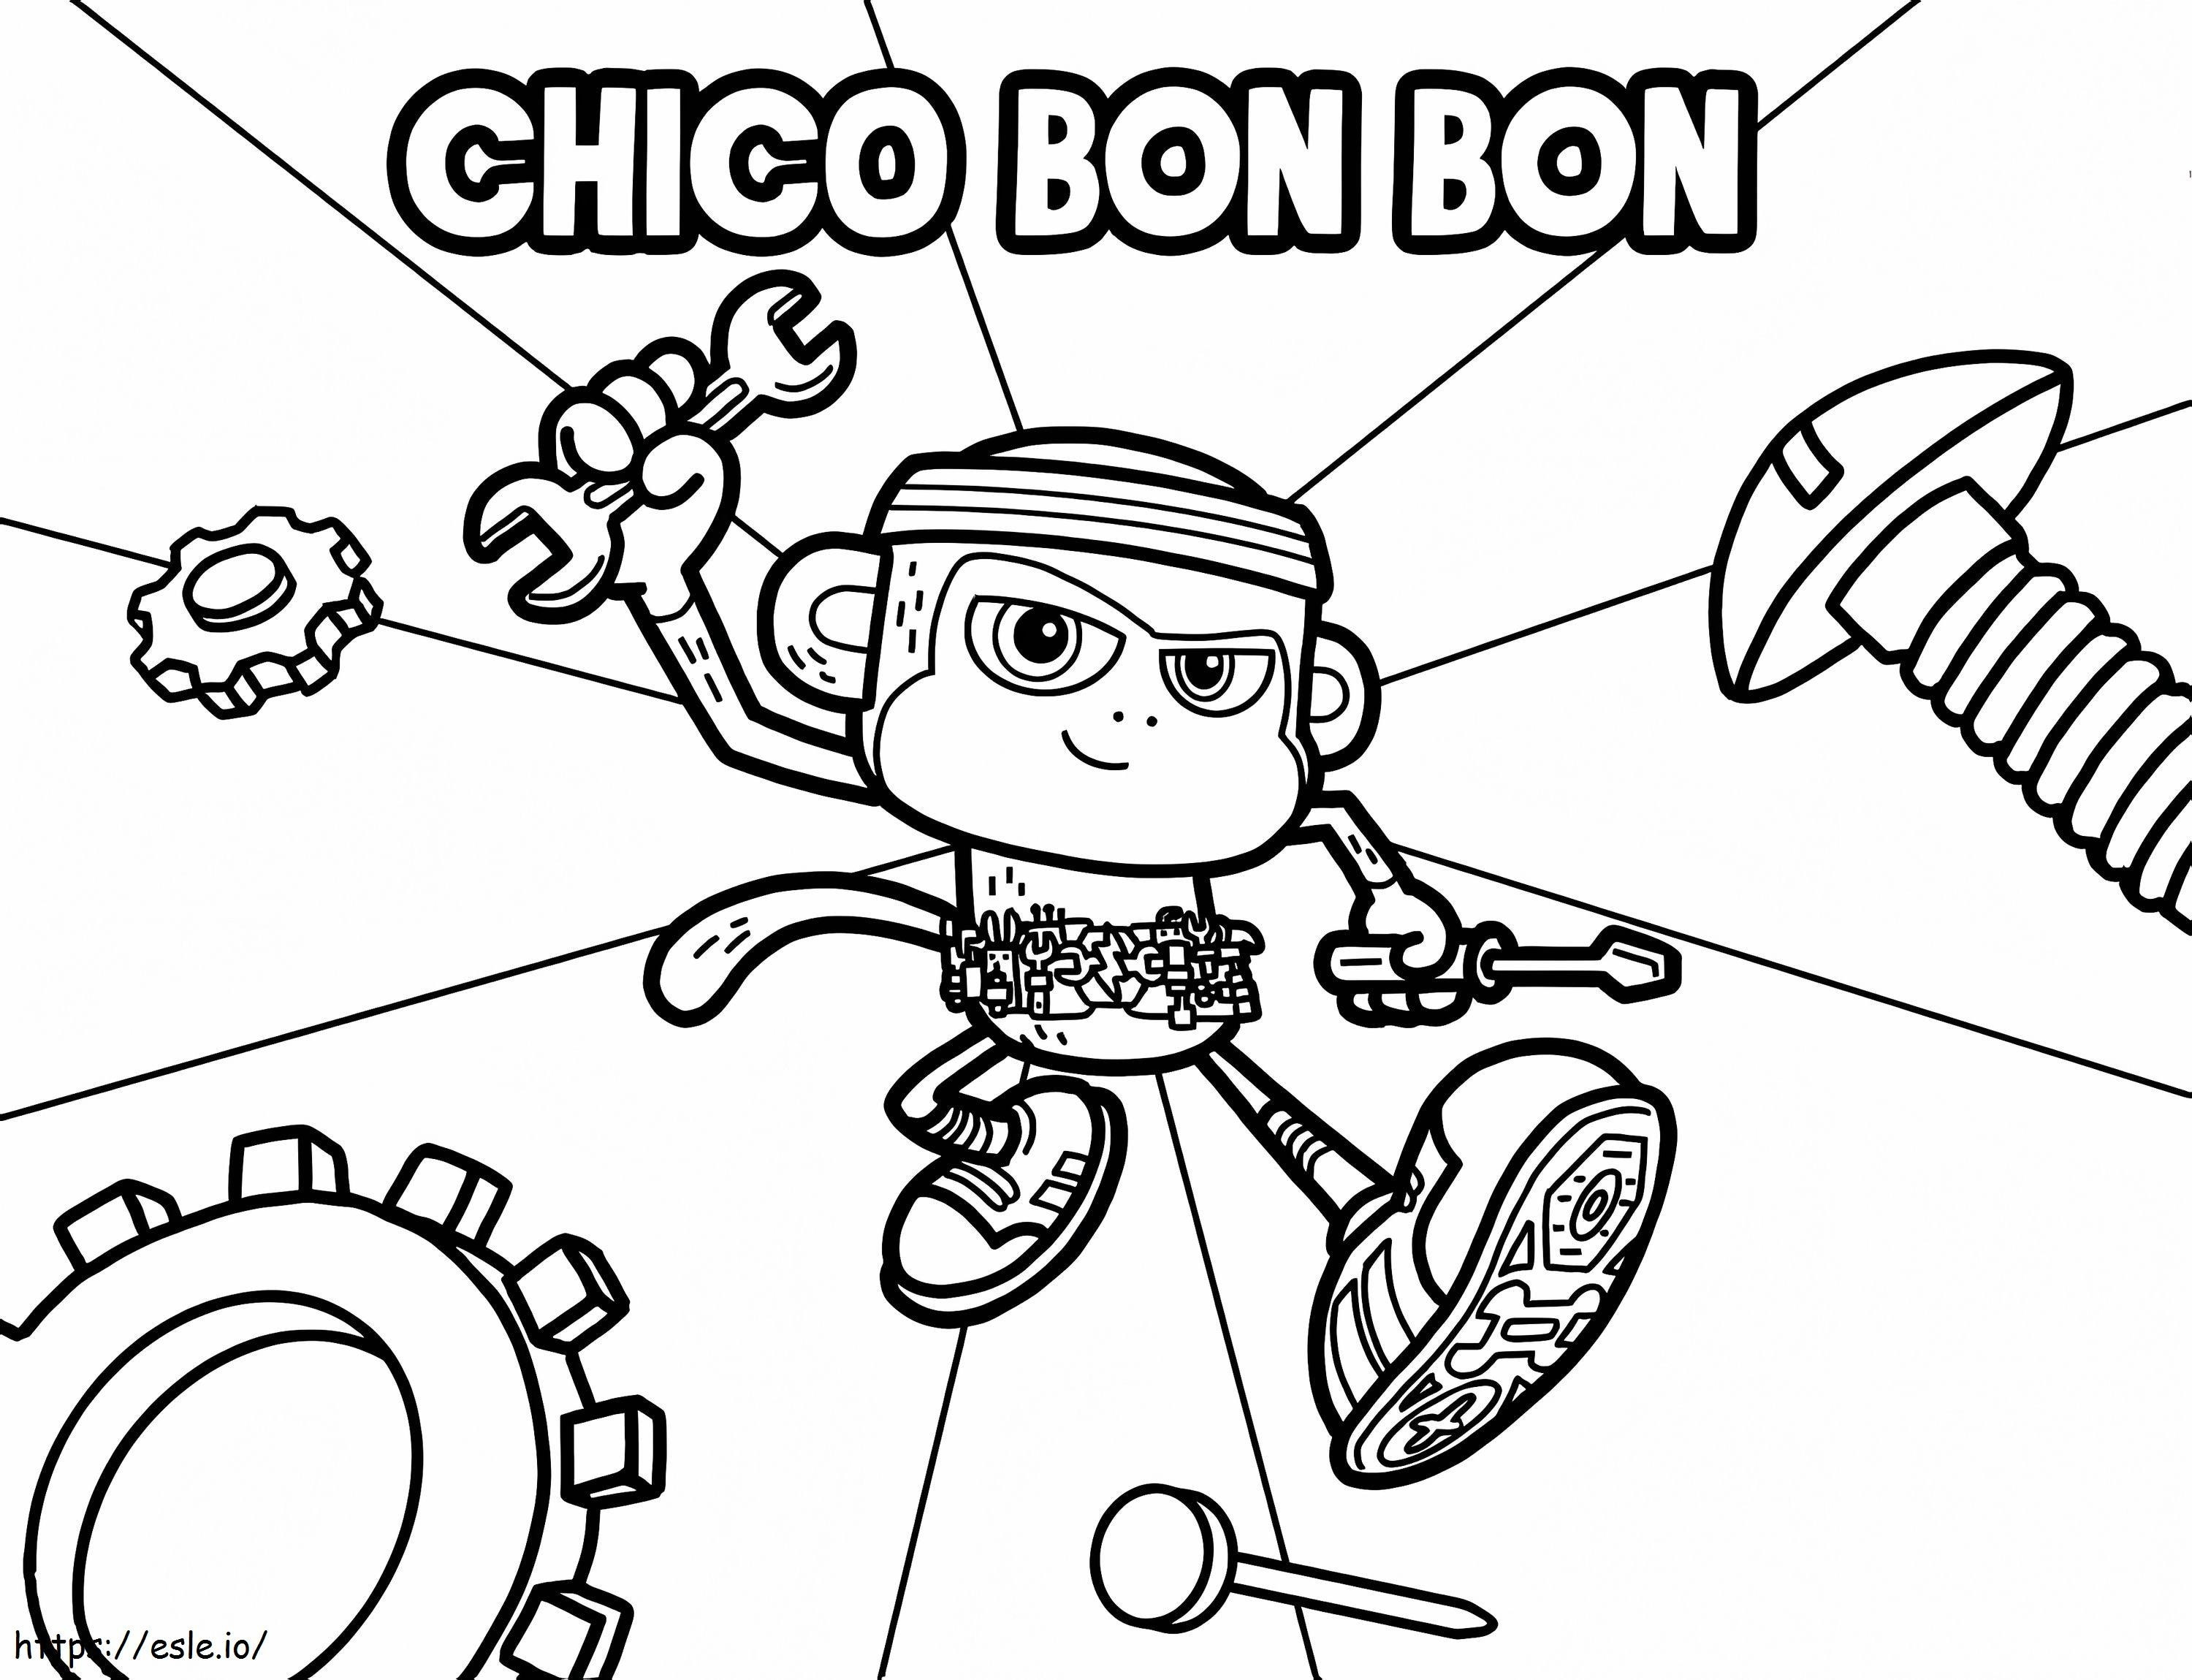 Klassz Chico Bon Bon kifestő